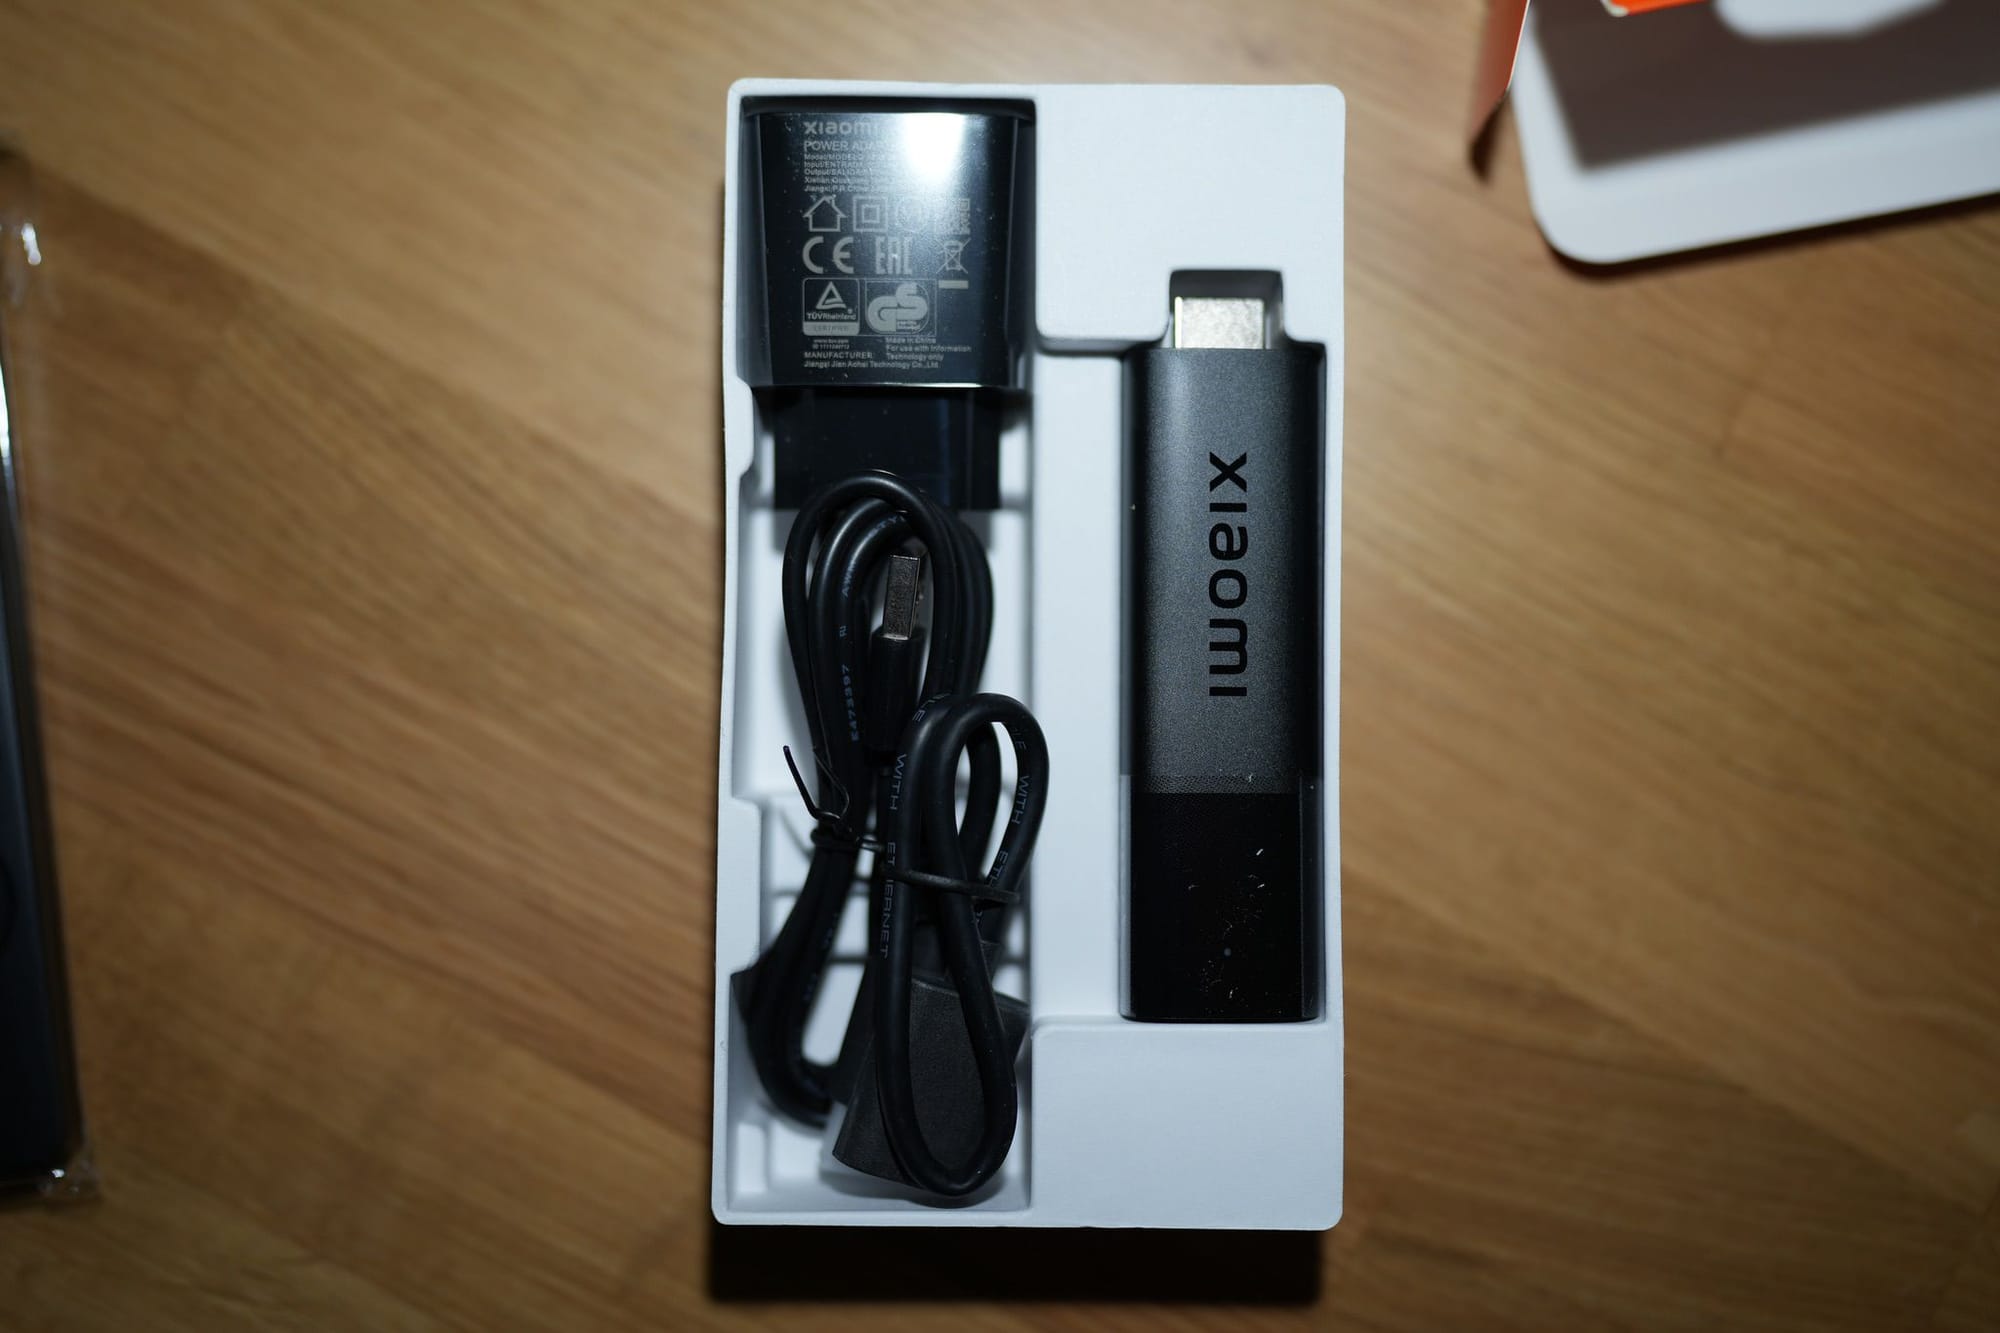 รีวิว Xiaomi TV Stick 4K กล่องทีวีขนาดจิ๋วในราคาเข้าถึงง่าย